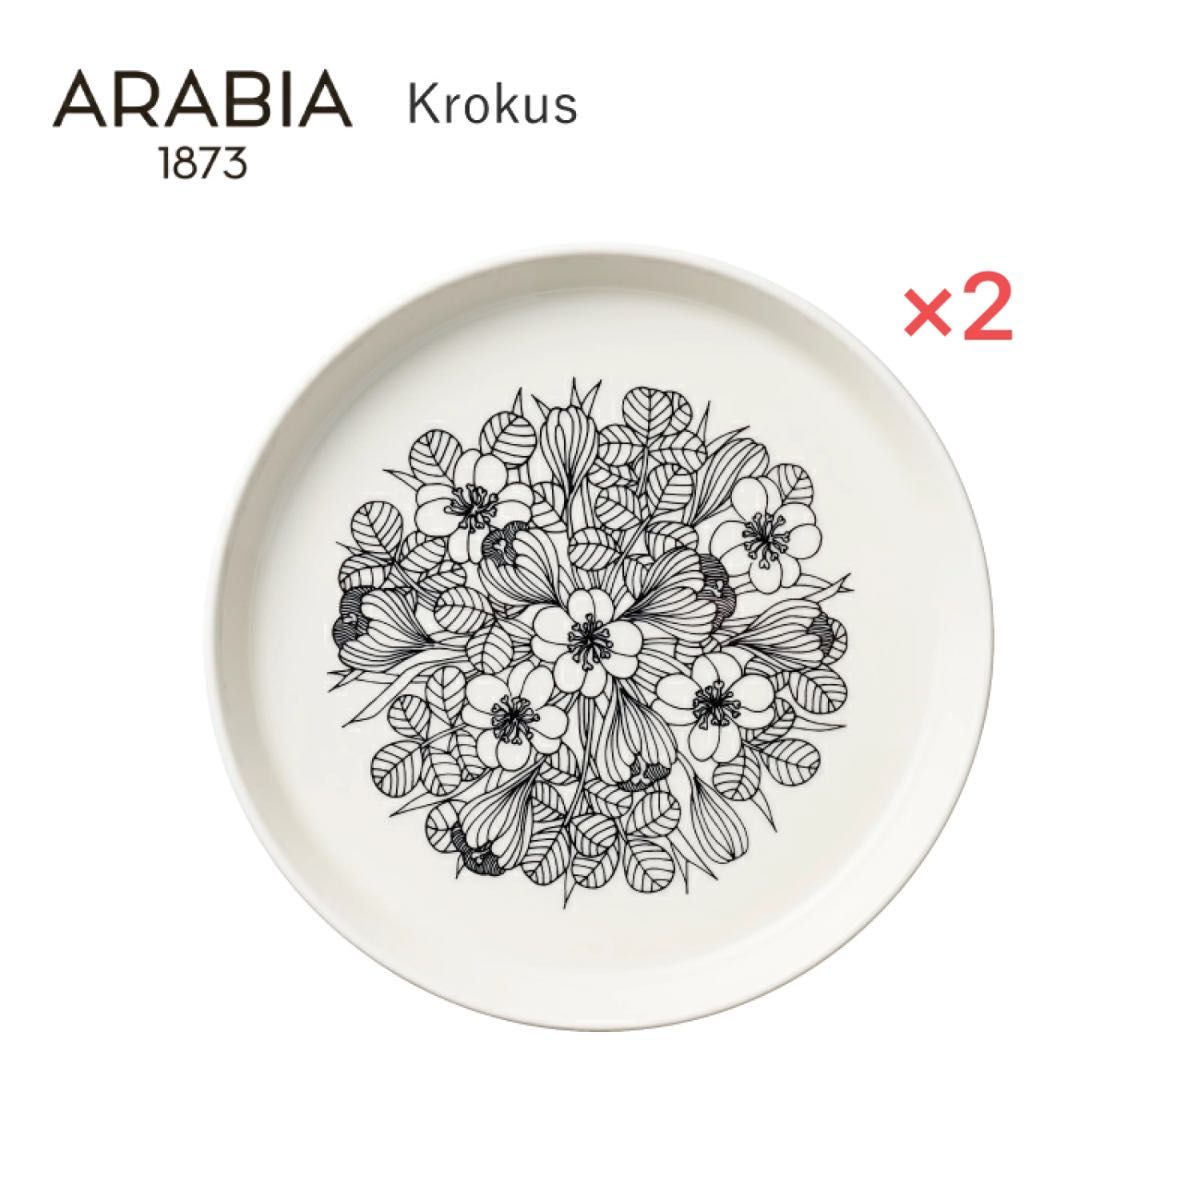 【新品未開封】アラビア クロッカス ブラック プレート 19cm 2枚セット ARABIA Krokus 北欧雑貨 食器